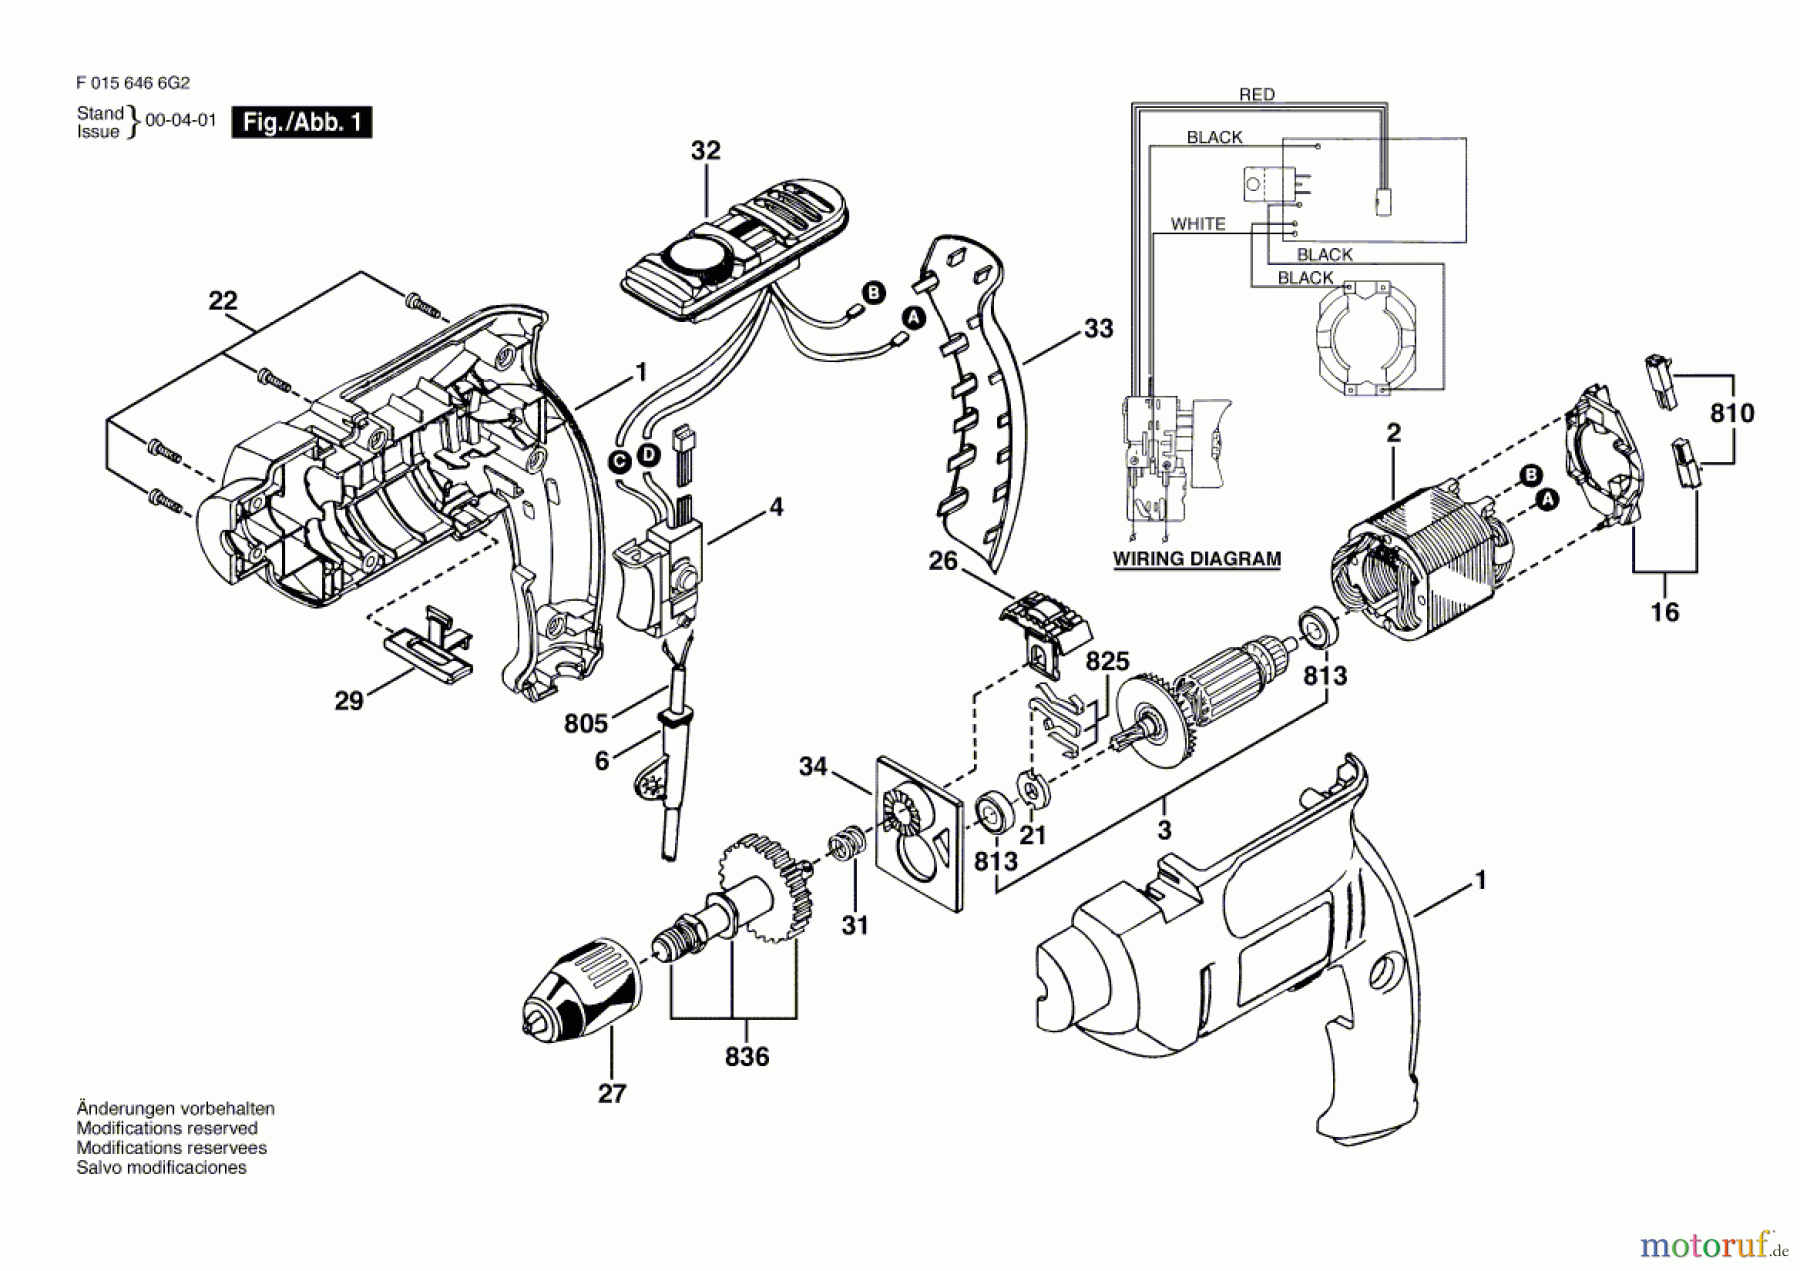  Bosch Werkzeug Ratsche 6466 Seite 1